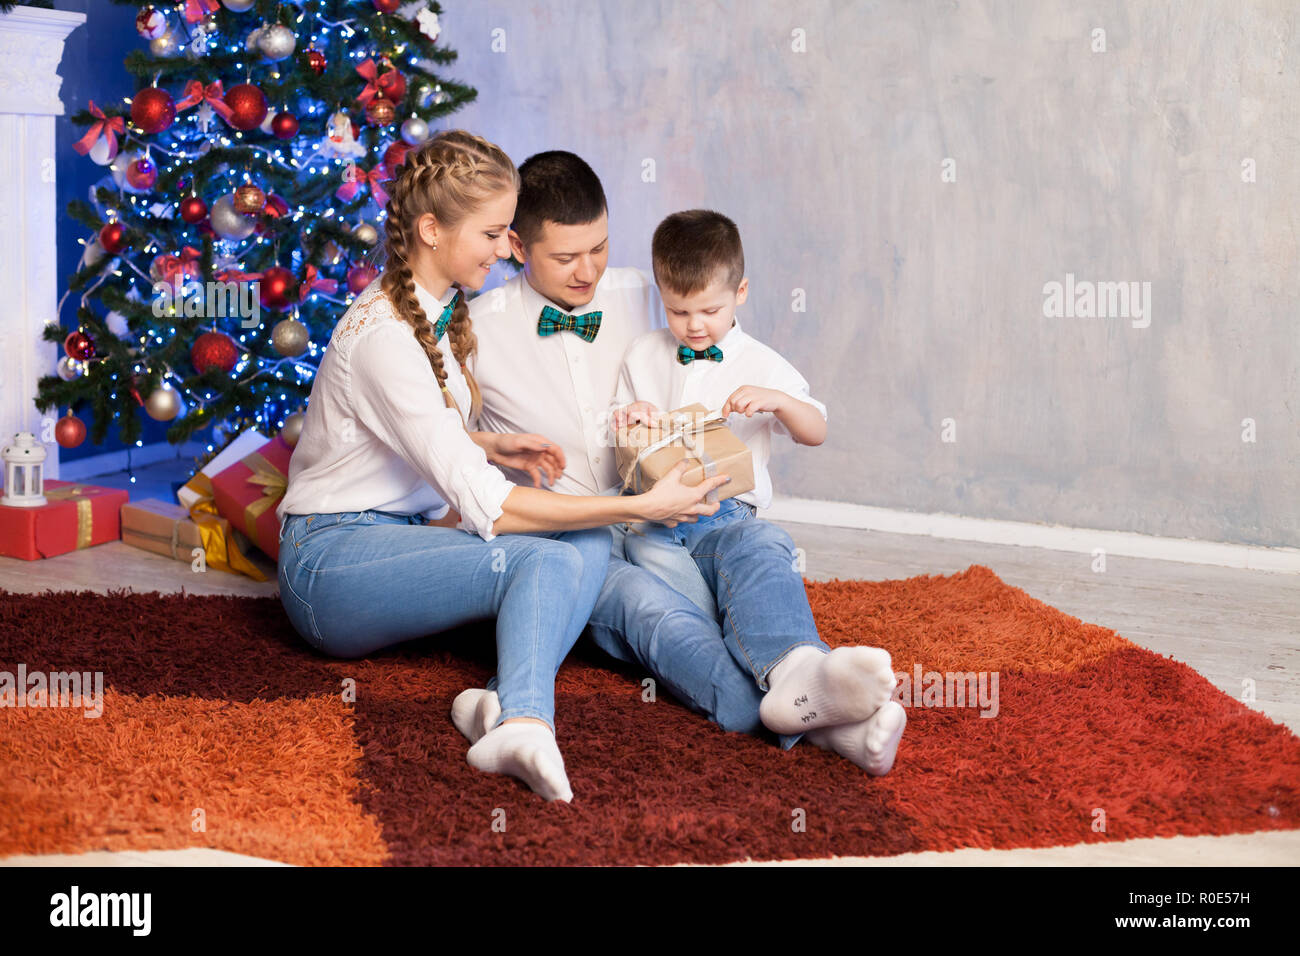 Regali Di Natale Per Un Papa.Mamma E Papa Di Un Ragazzino Aprire I Regali Di Natale Per Il Nuovo Anno Foto Stock Alamy